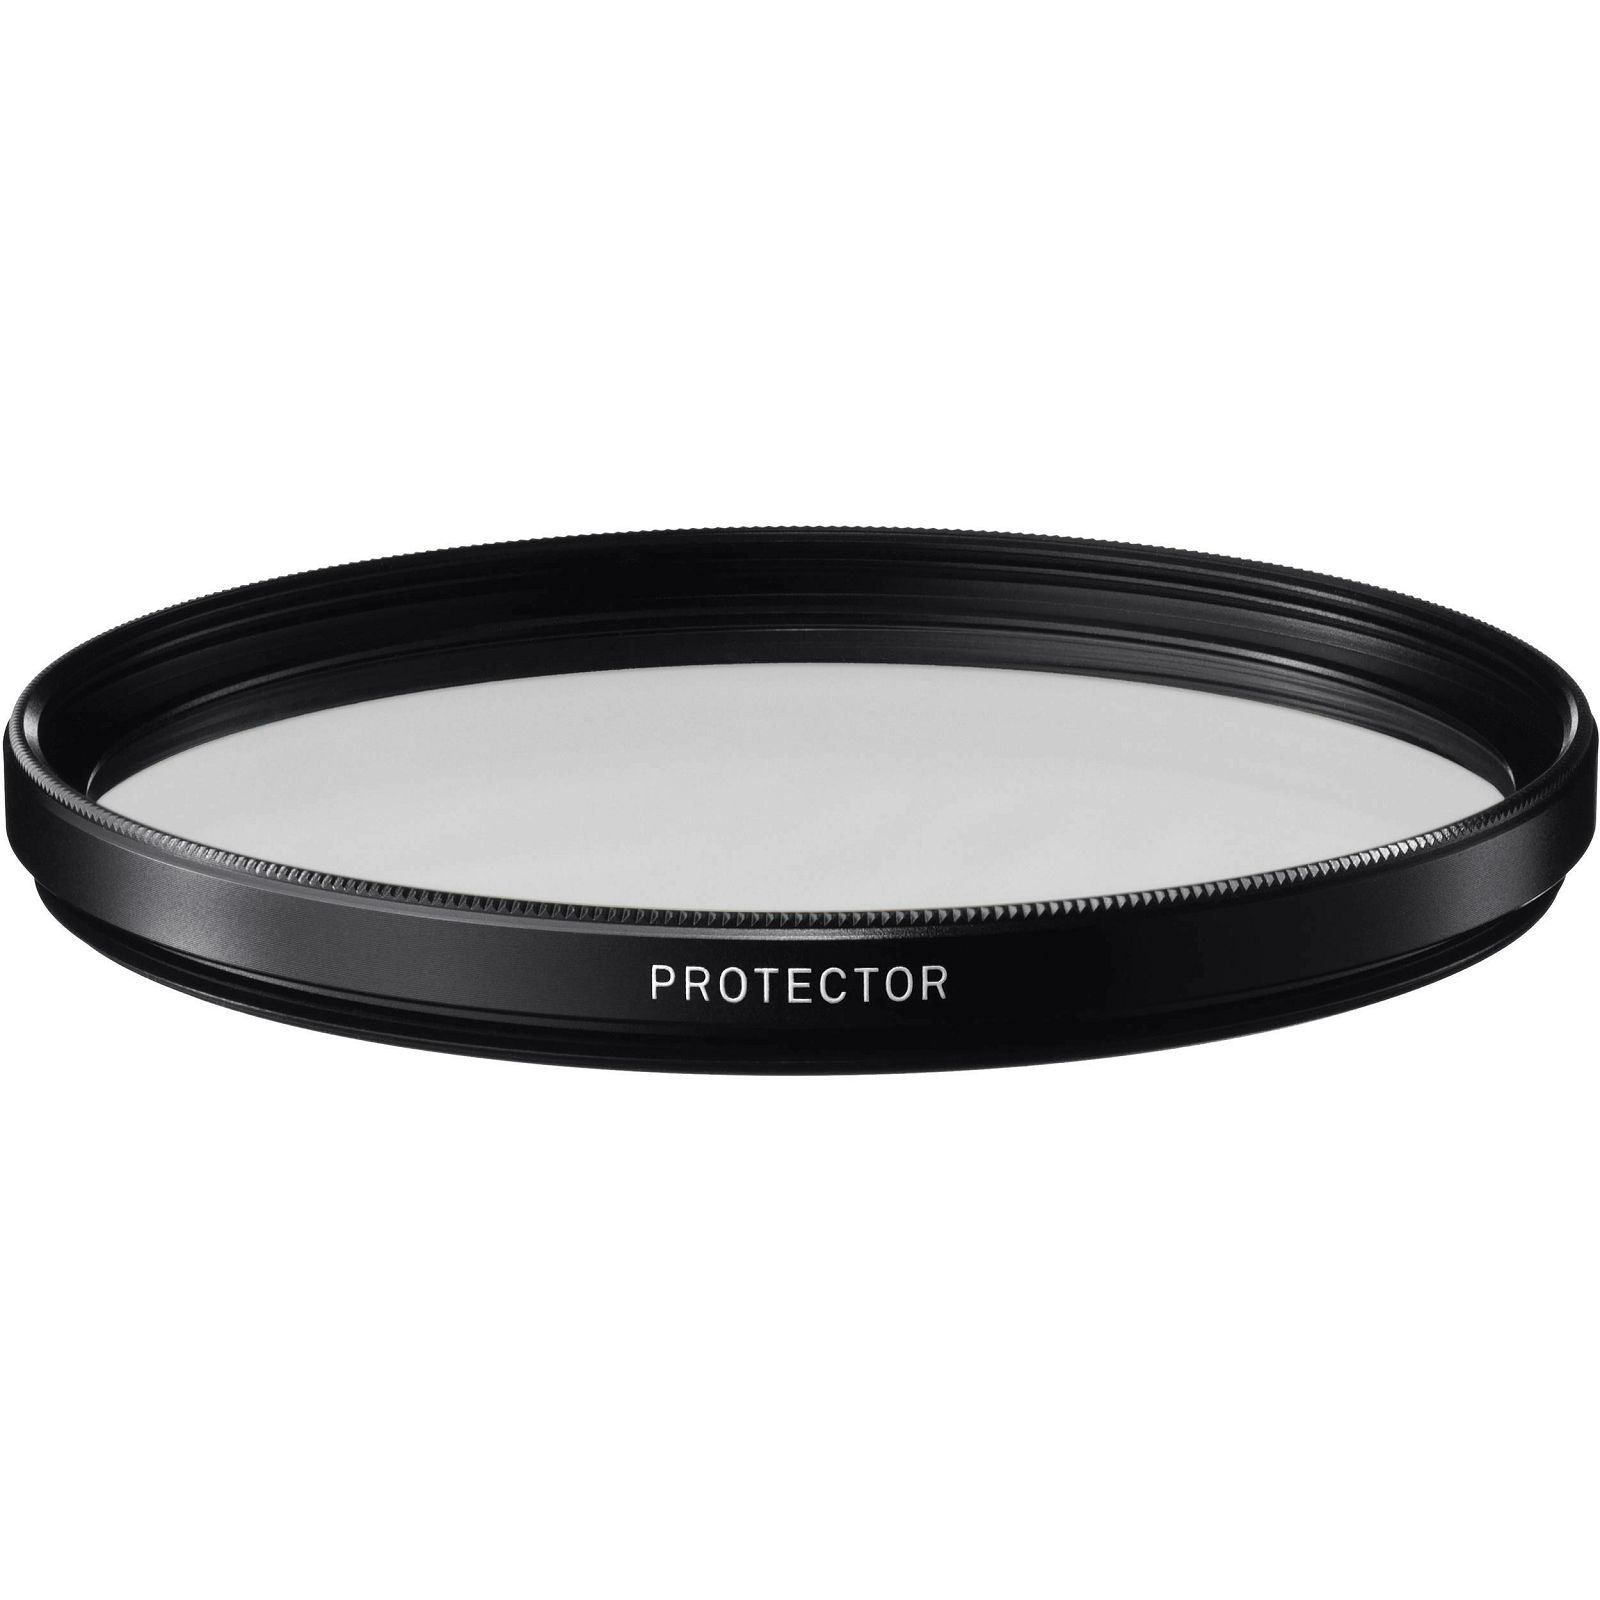 Sigma WR Protector 77mm zaštitni filter za objektiv (AFG9D0)